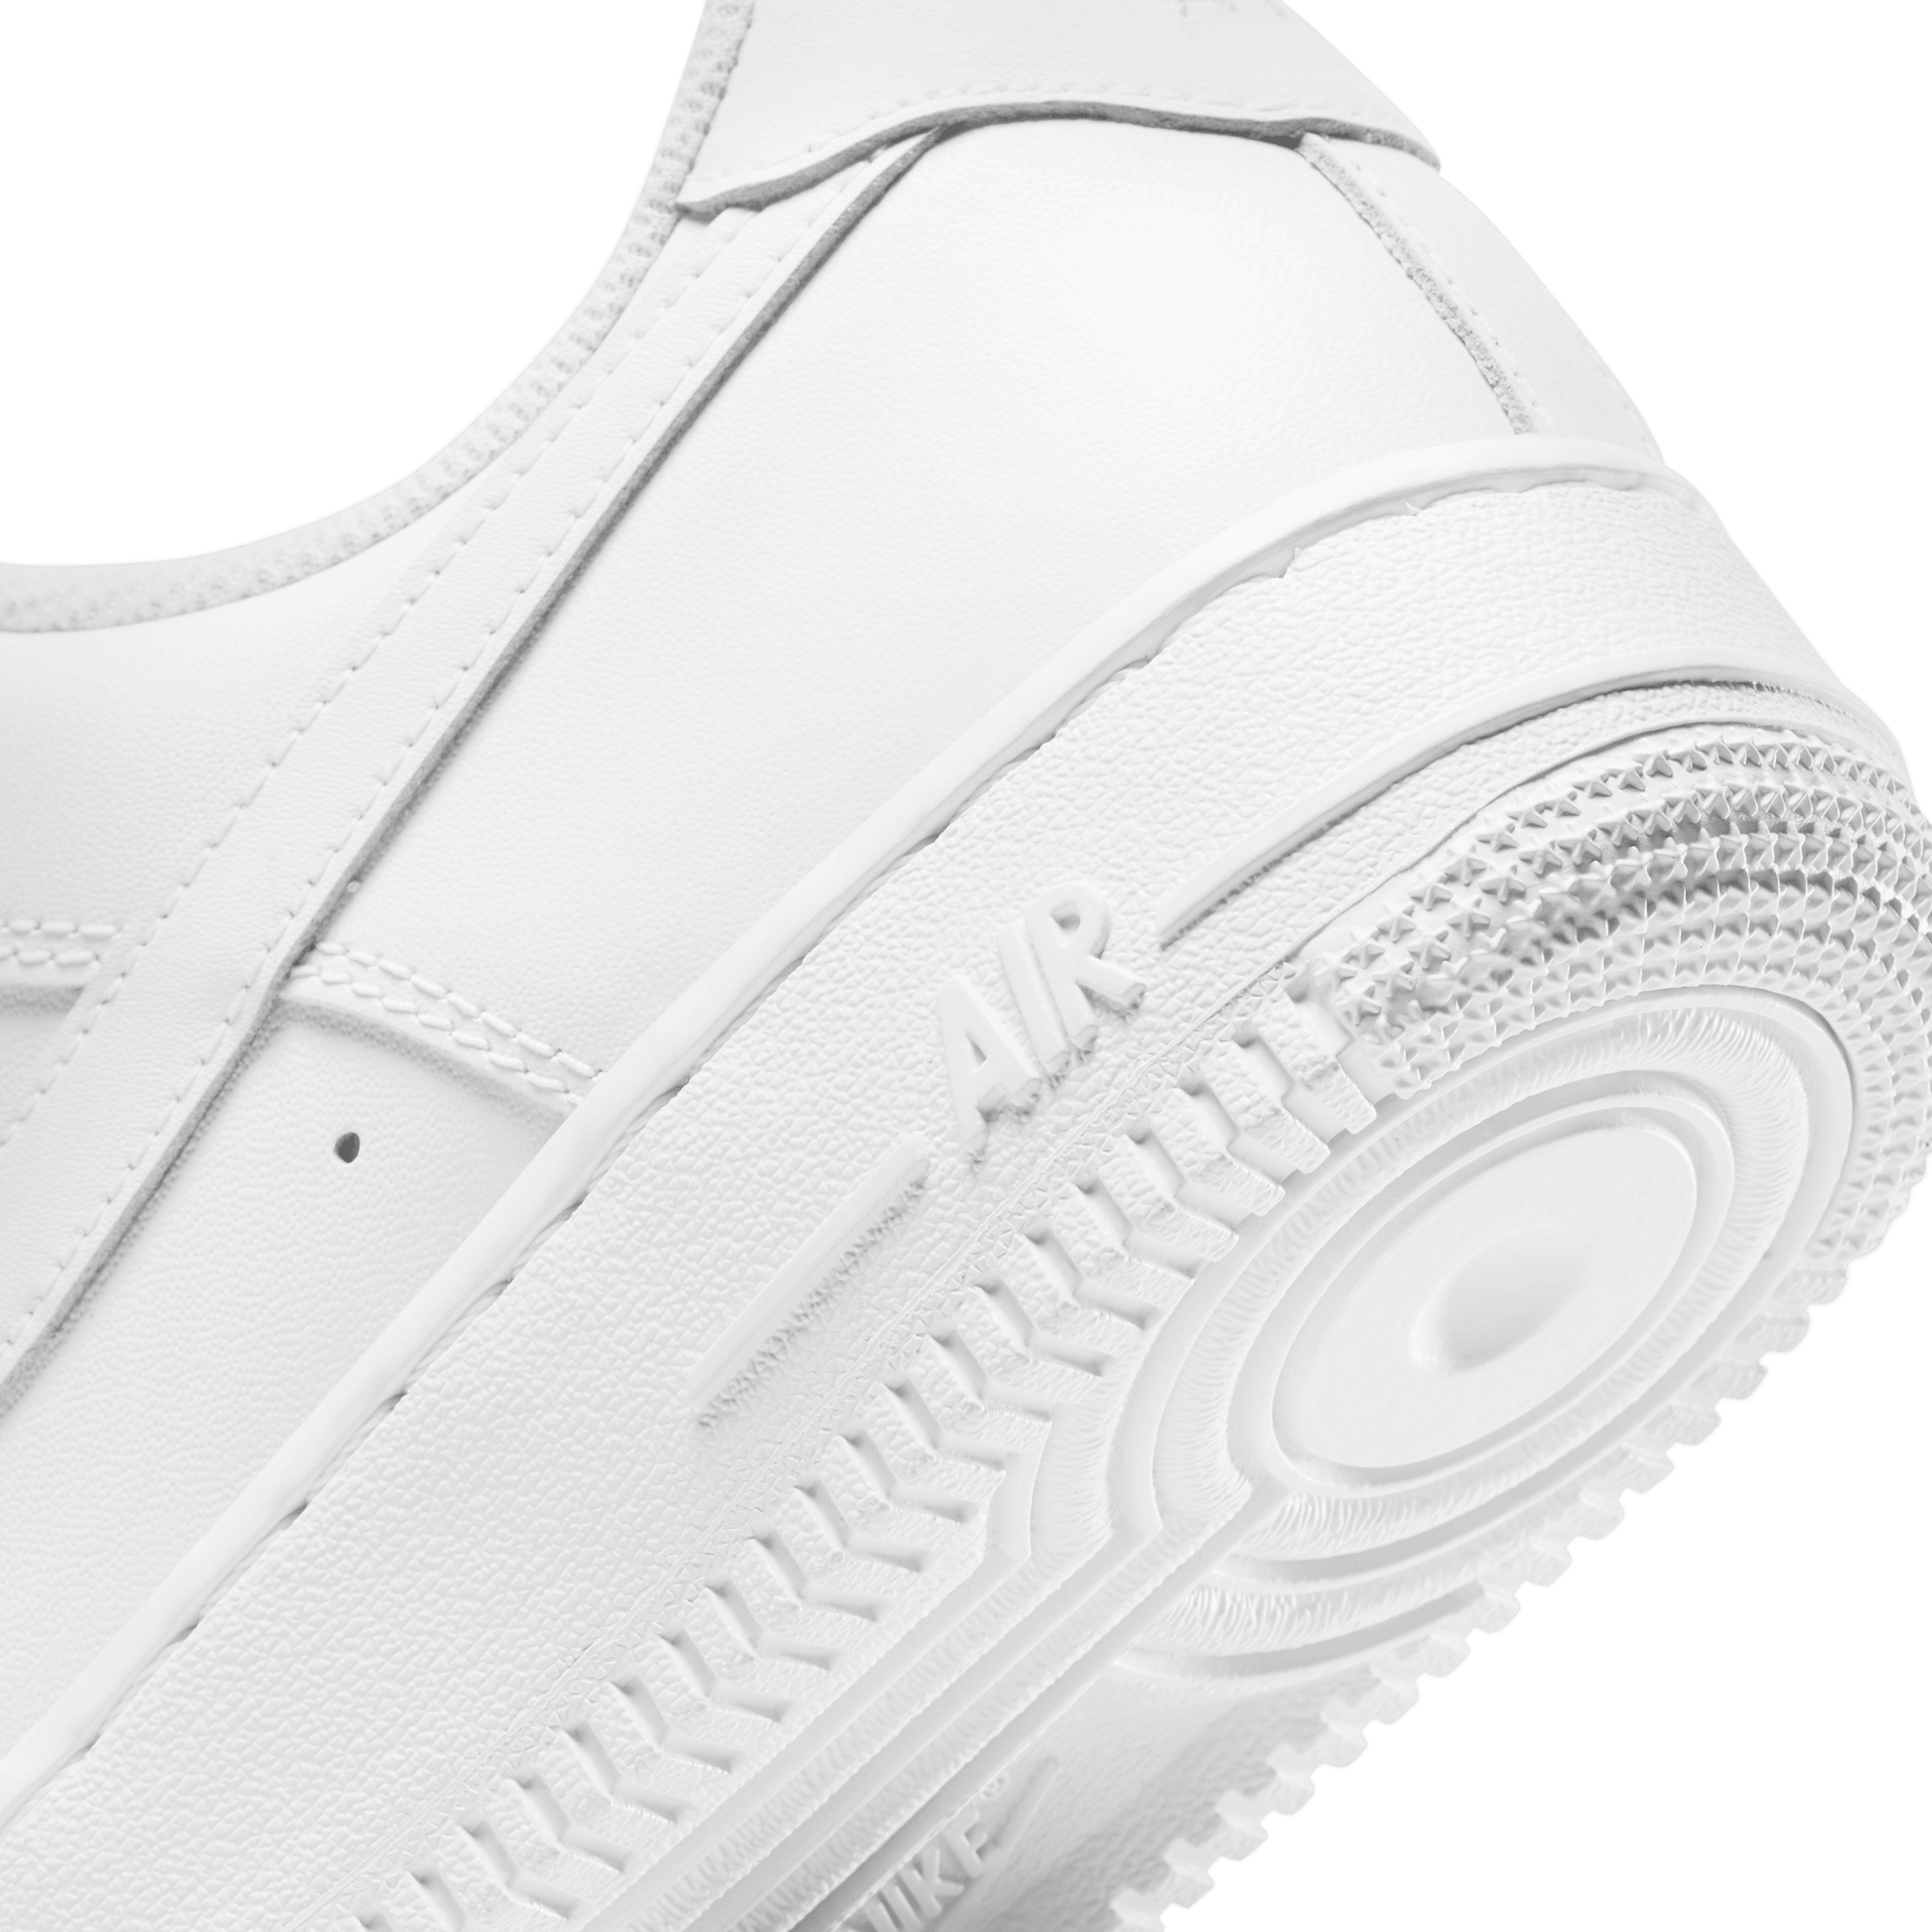 Women's Nike Air Force 1 'White/White' (2022) - CADEAUME